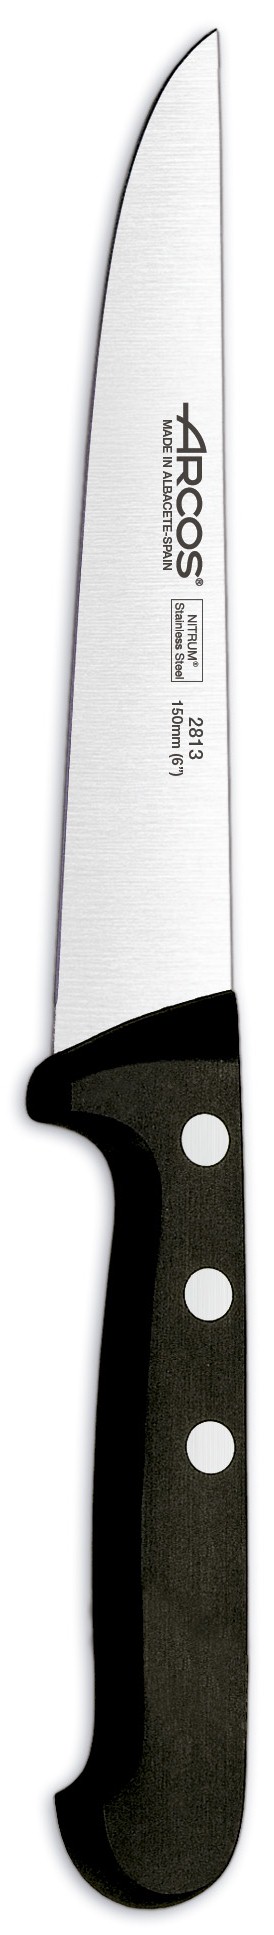 סכין מטבח ארקוס דגם 2813 - Arcos